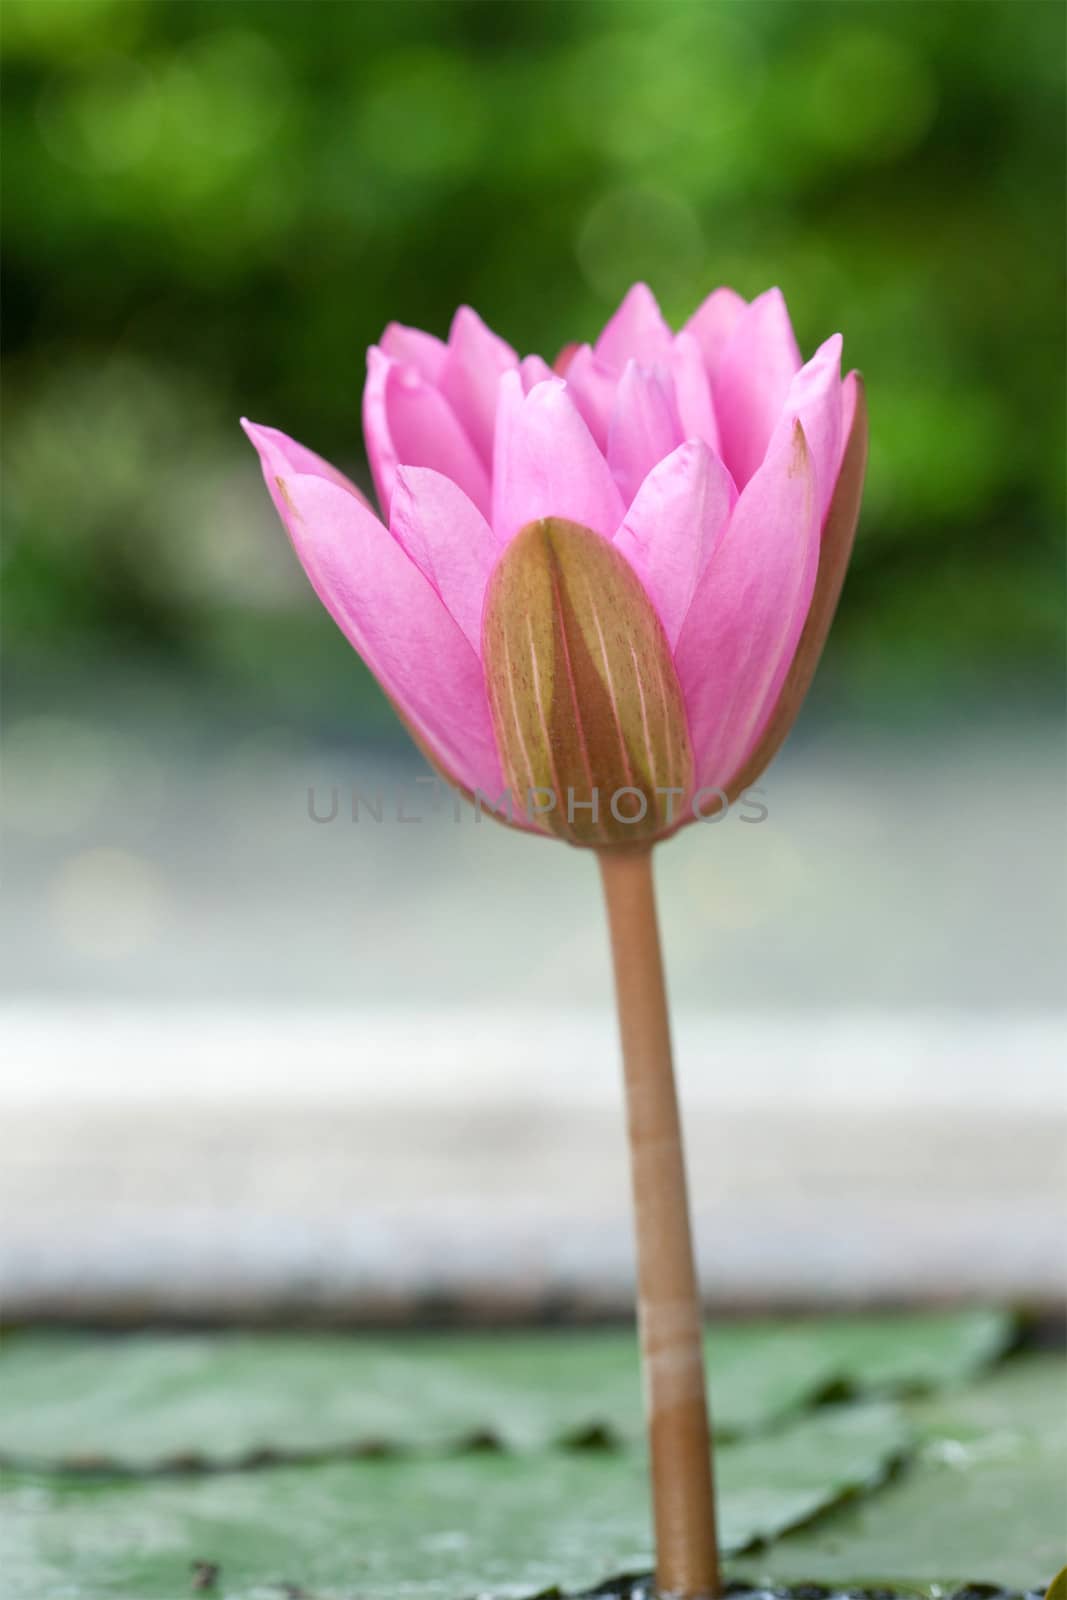 A pink lotus flower